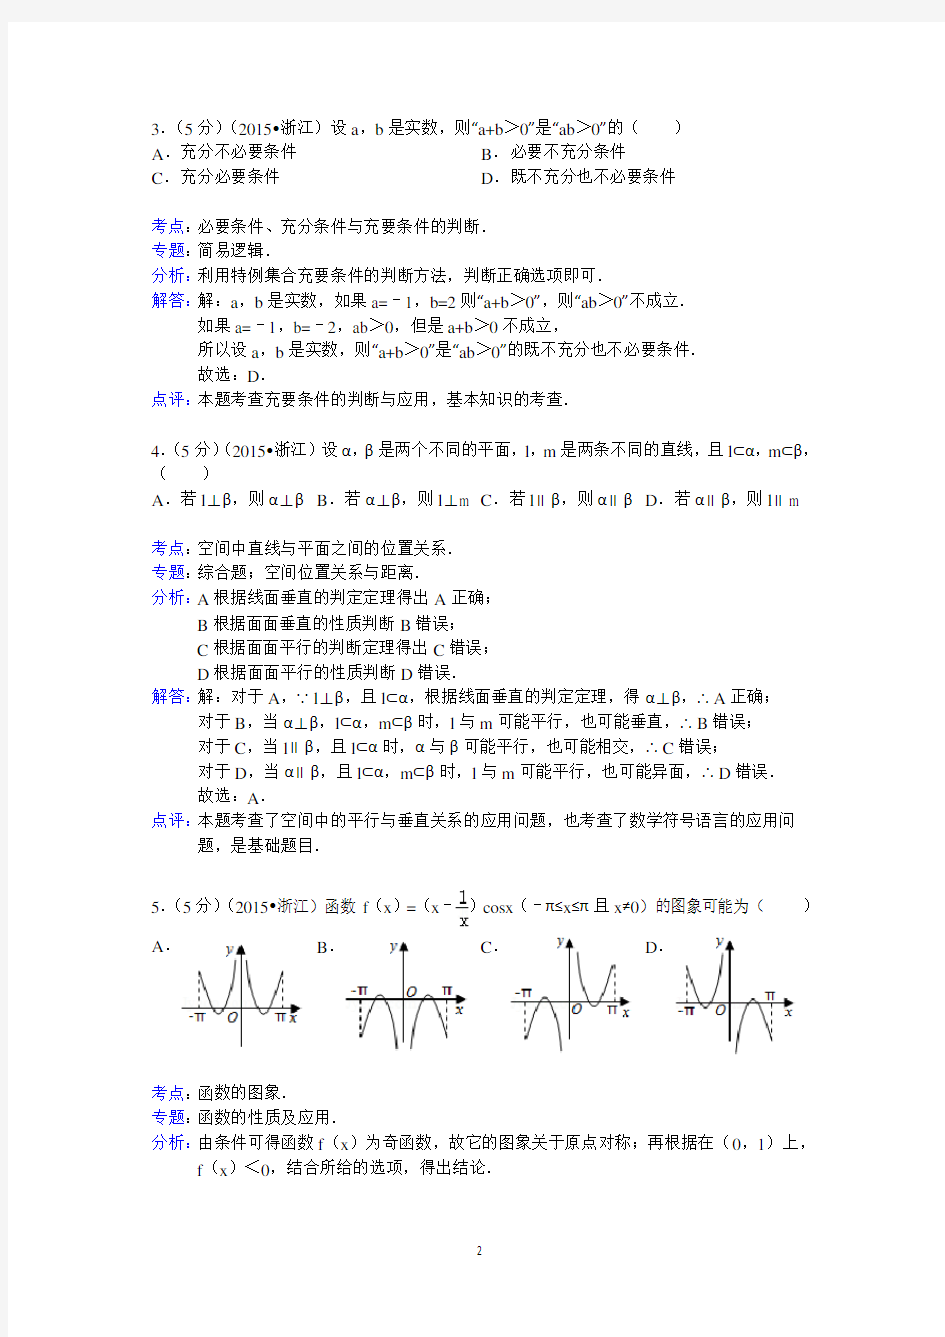 2015年浙江省高考数学试卷(文科)答案与解析